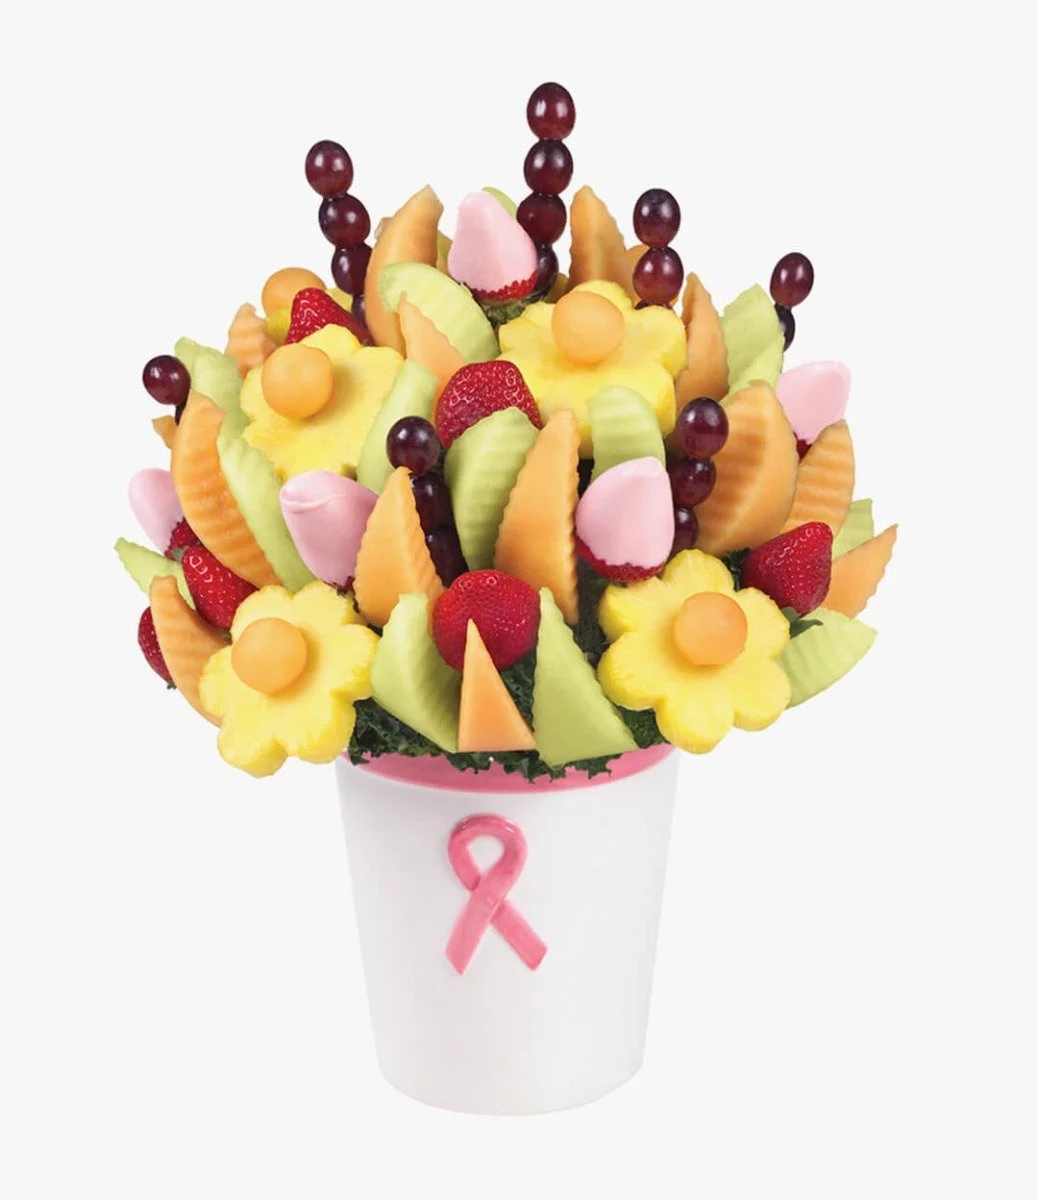 تصميم الفاكهة للتوعية بسرطان الثدي من إيدبل أرينجمنتس